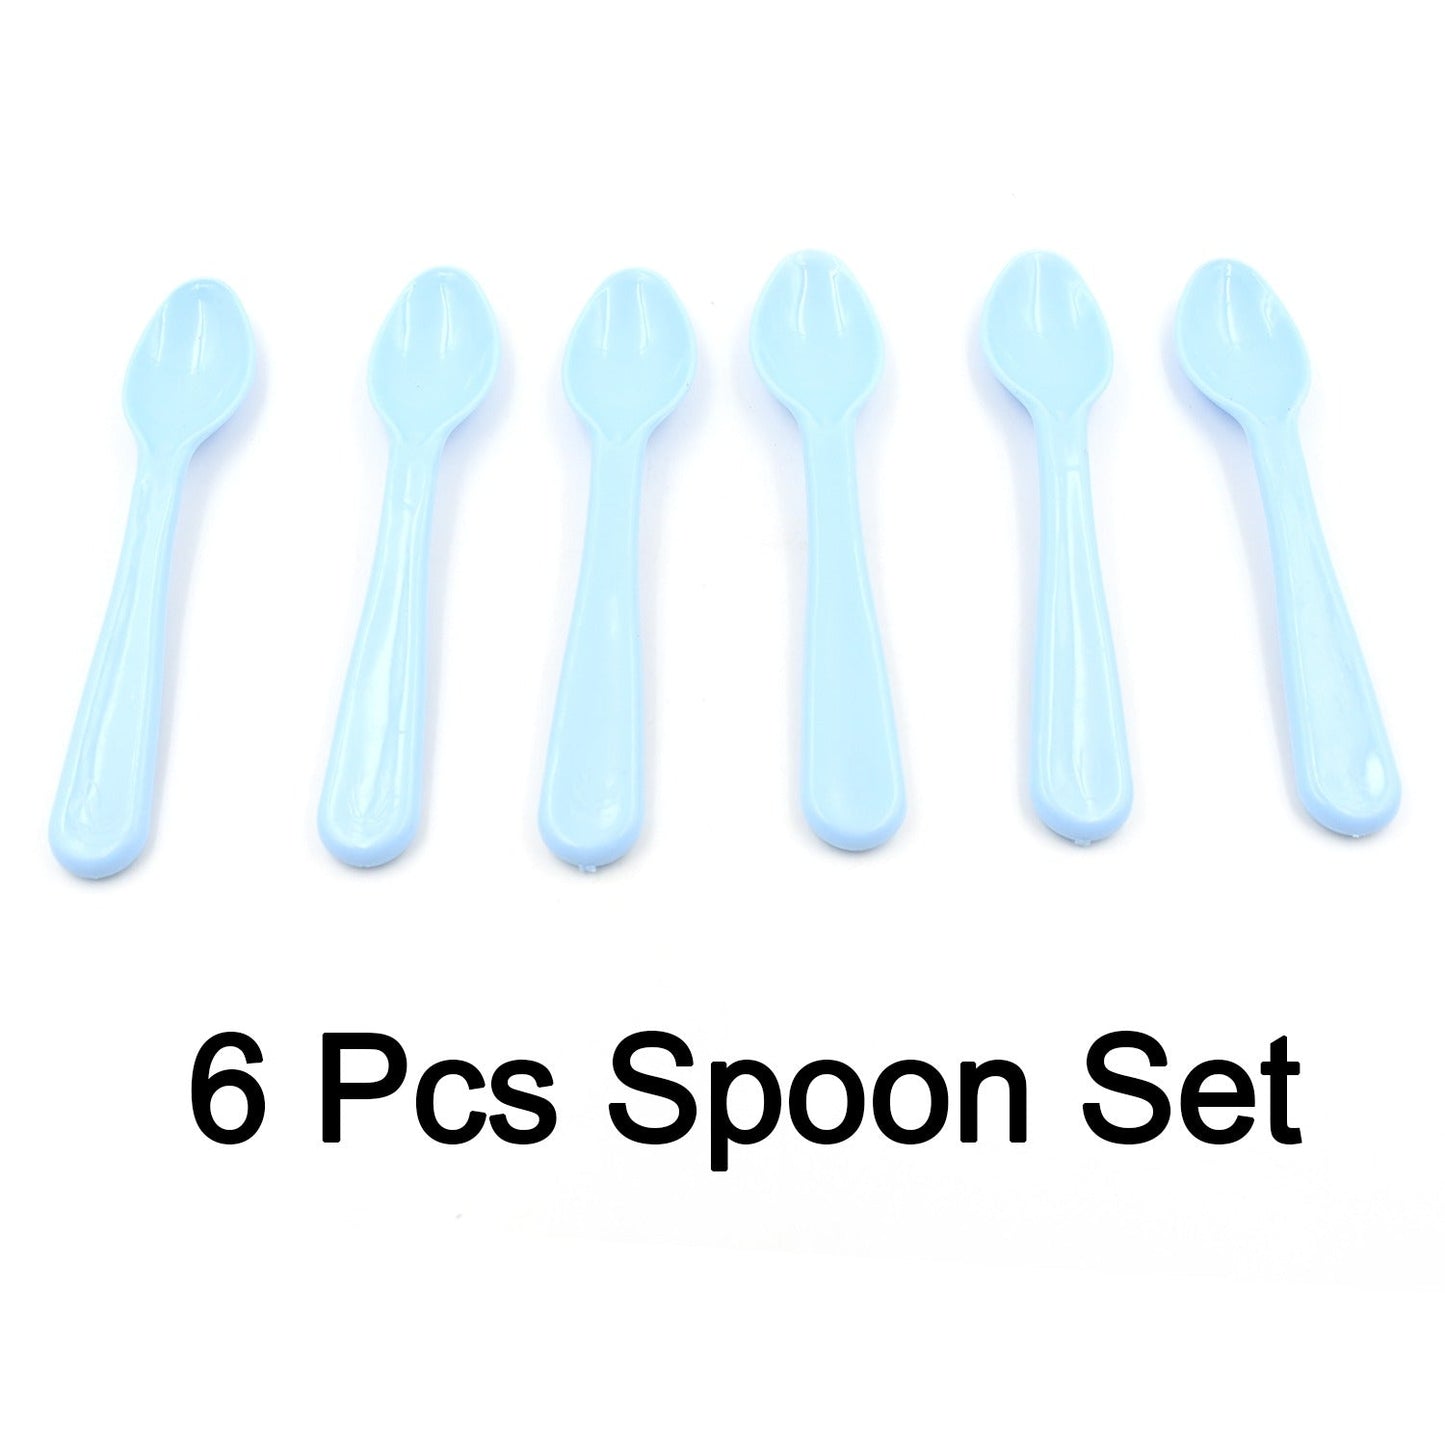 Food Plastic Spoon Set, Plastic Table Spoon Set Plastic Tea Spoon, Coffee with ABS Plastic, Heat-Resistant Spoon (6 Pc Set)